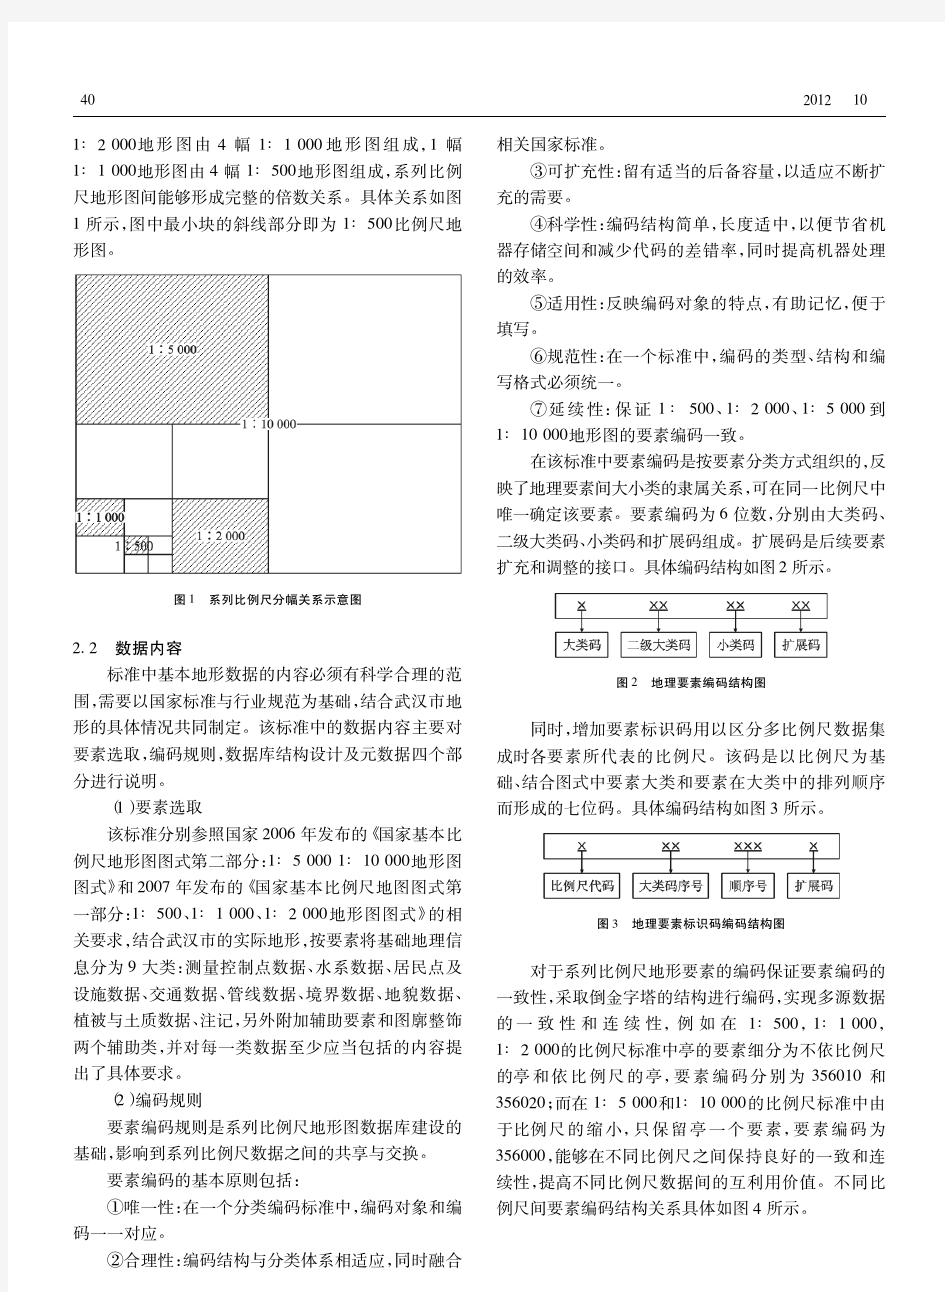 武汉市系列比例尺地形图要素分类编码及数据库标准的编制研究